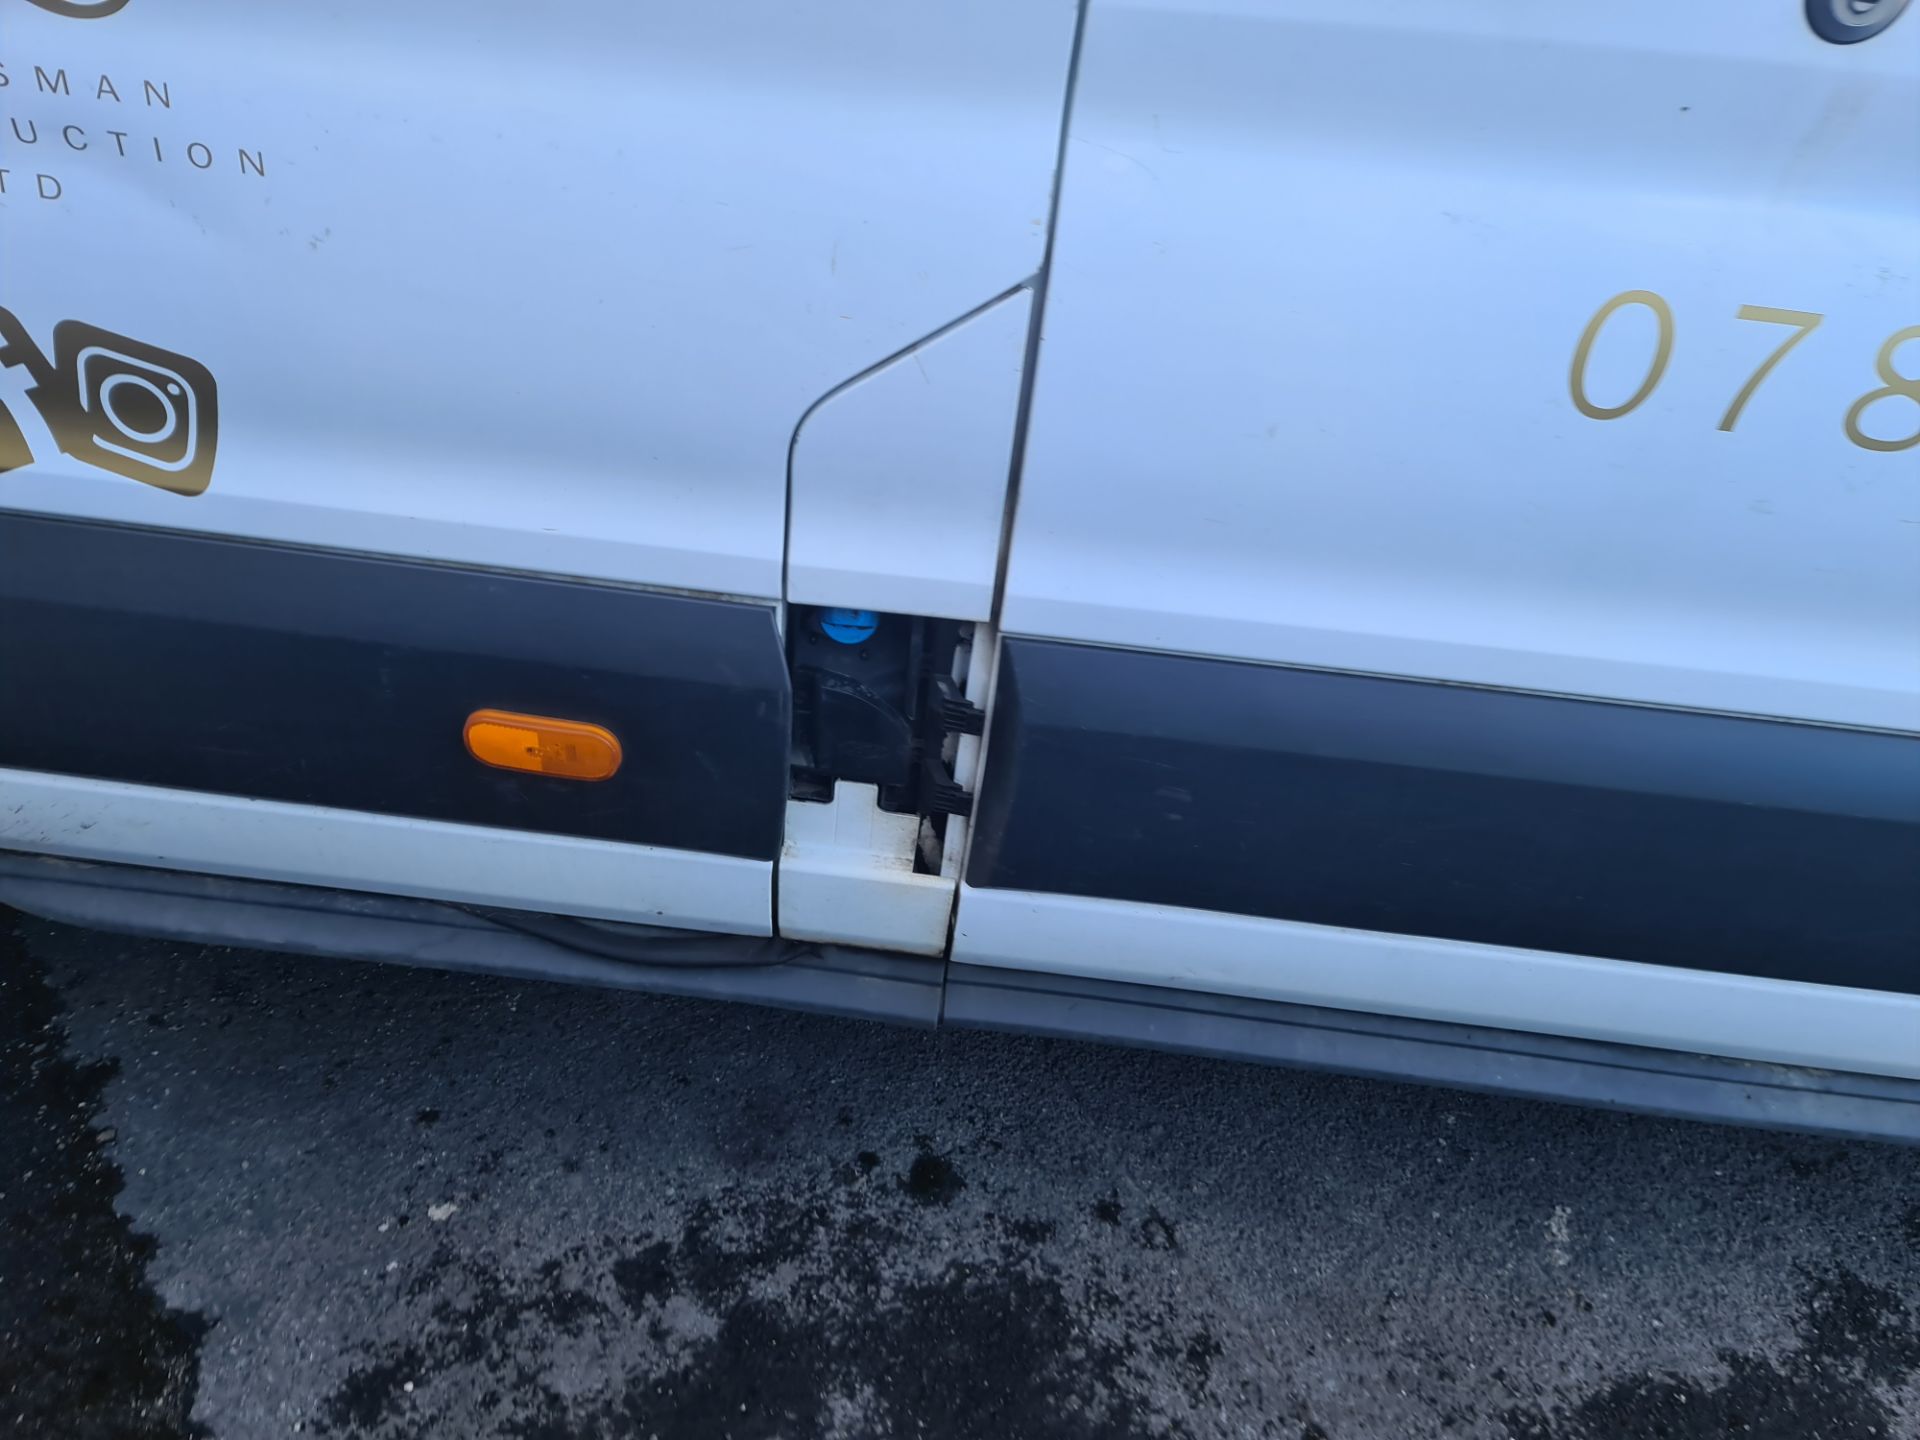 2018 Ford Transit 350 L4 H3 panel van - Image 8 of 61